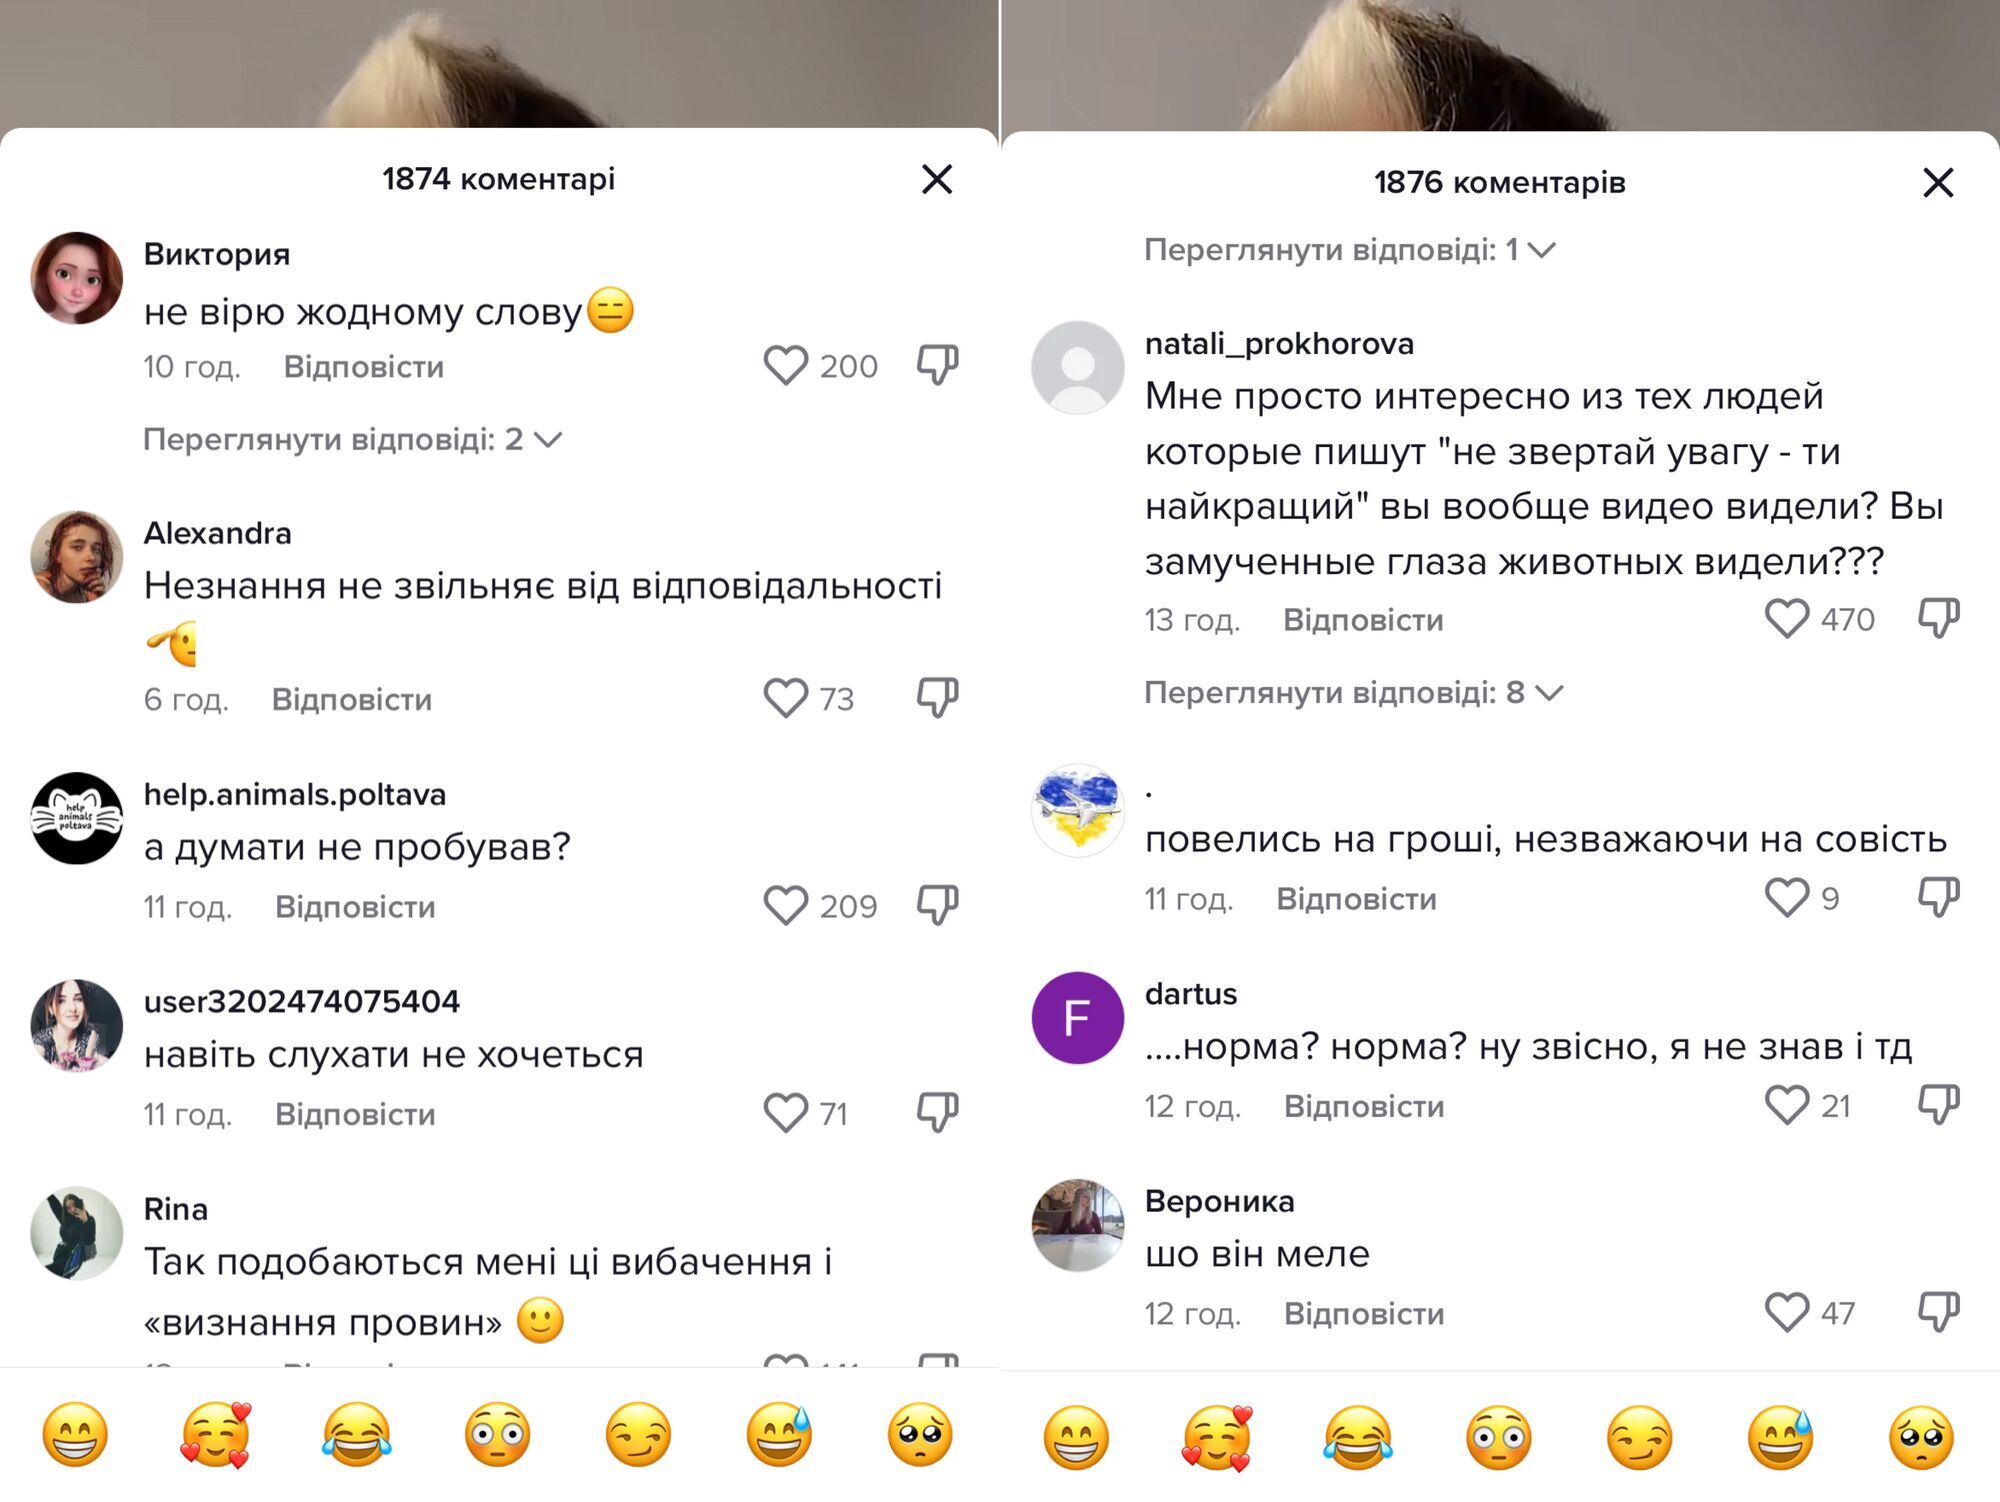 "Я одна йому не вірю?" Блогер Машуковський виправдався за скандал з морськими котиками у "Немо", але знову зазнав хейту